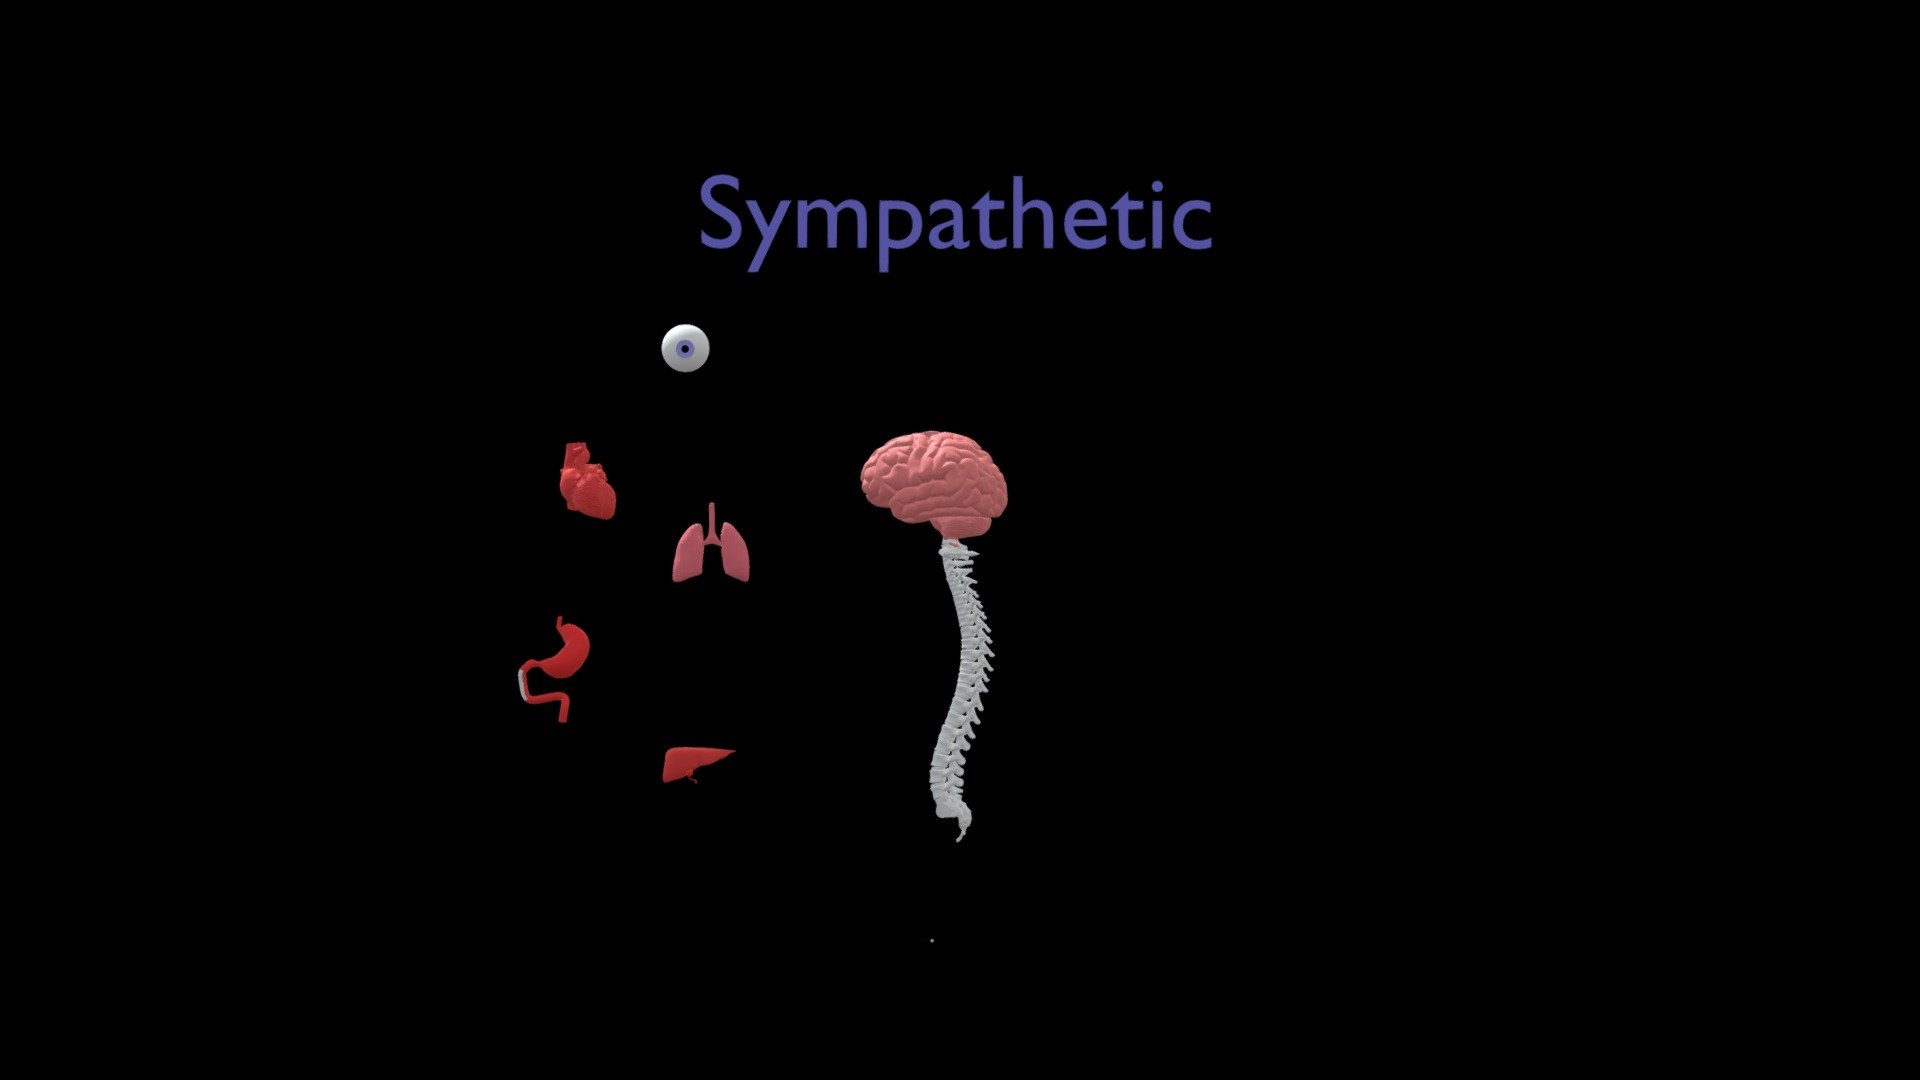 Sympathetic VS Parasympathetic Nervous System - 3D model by SYED ALIF IMRAN  (197329) (@syedalifimran99) [6d9e4bd]